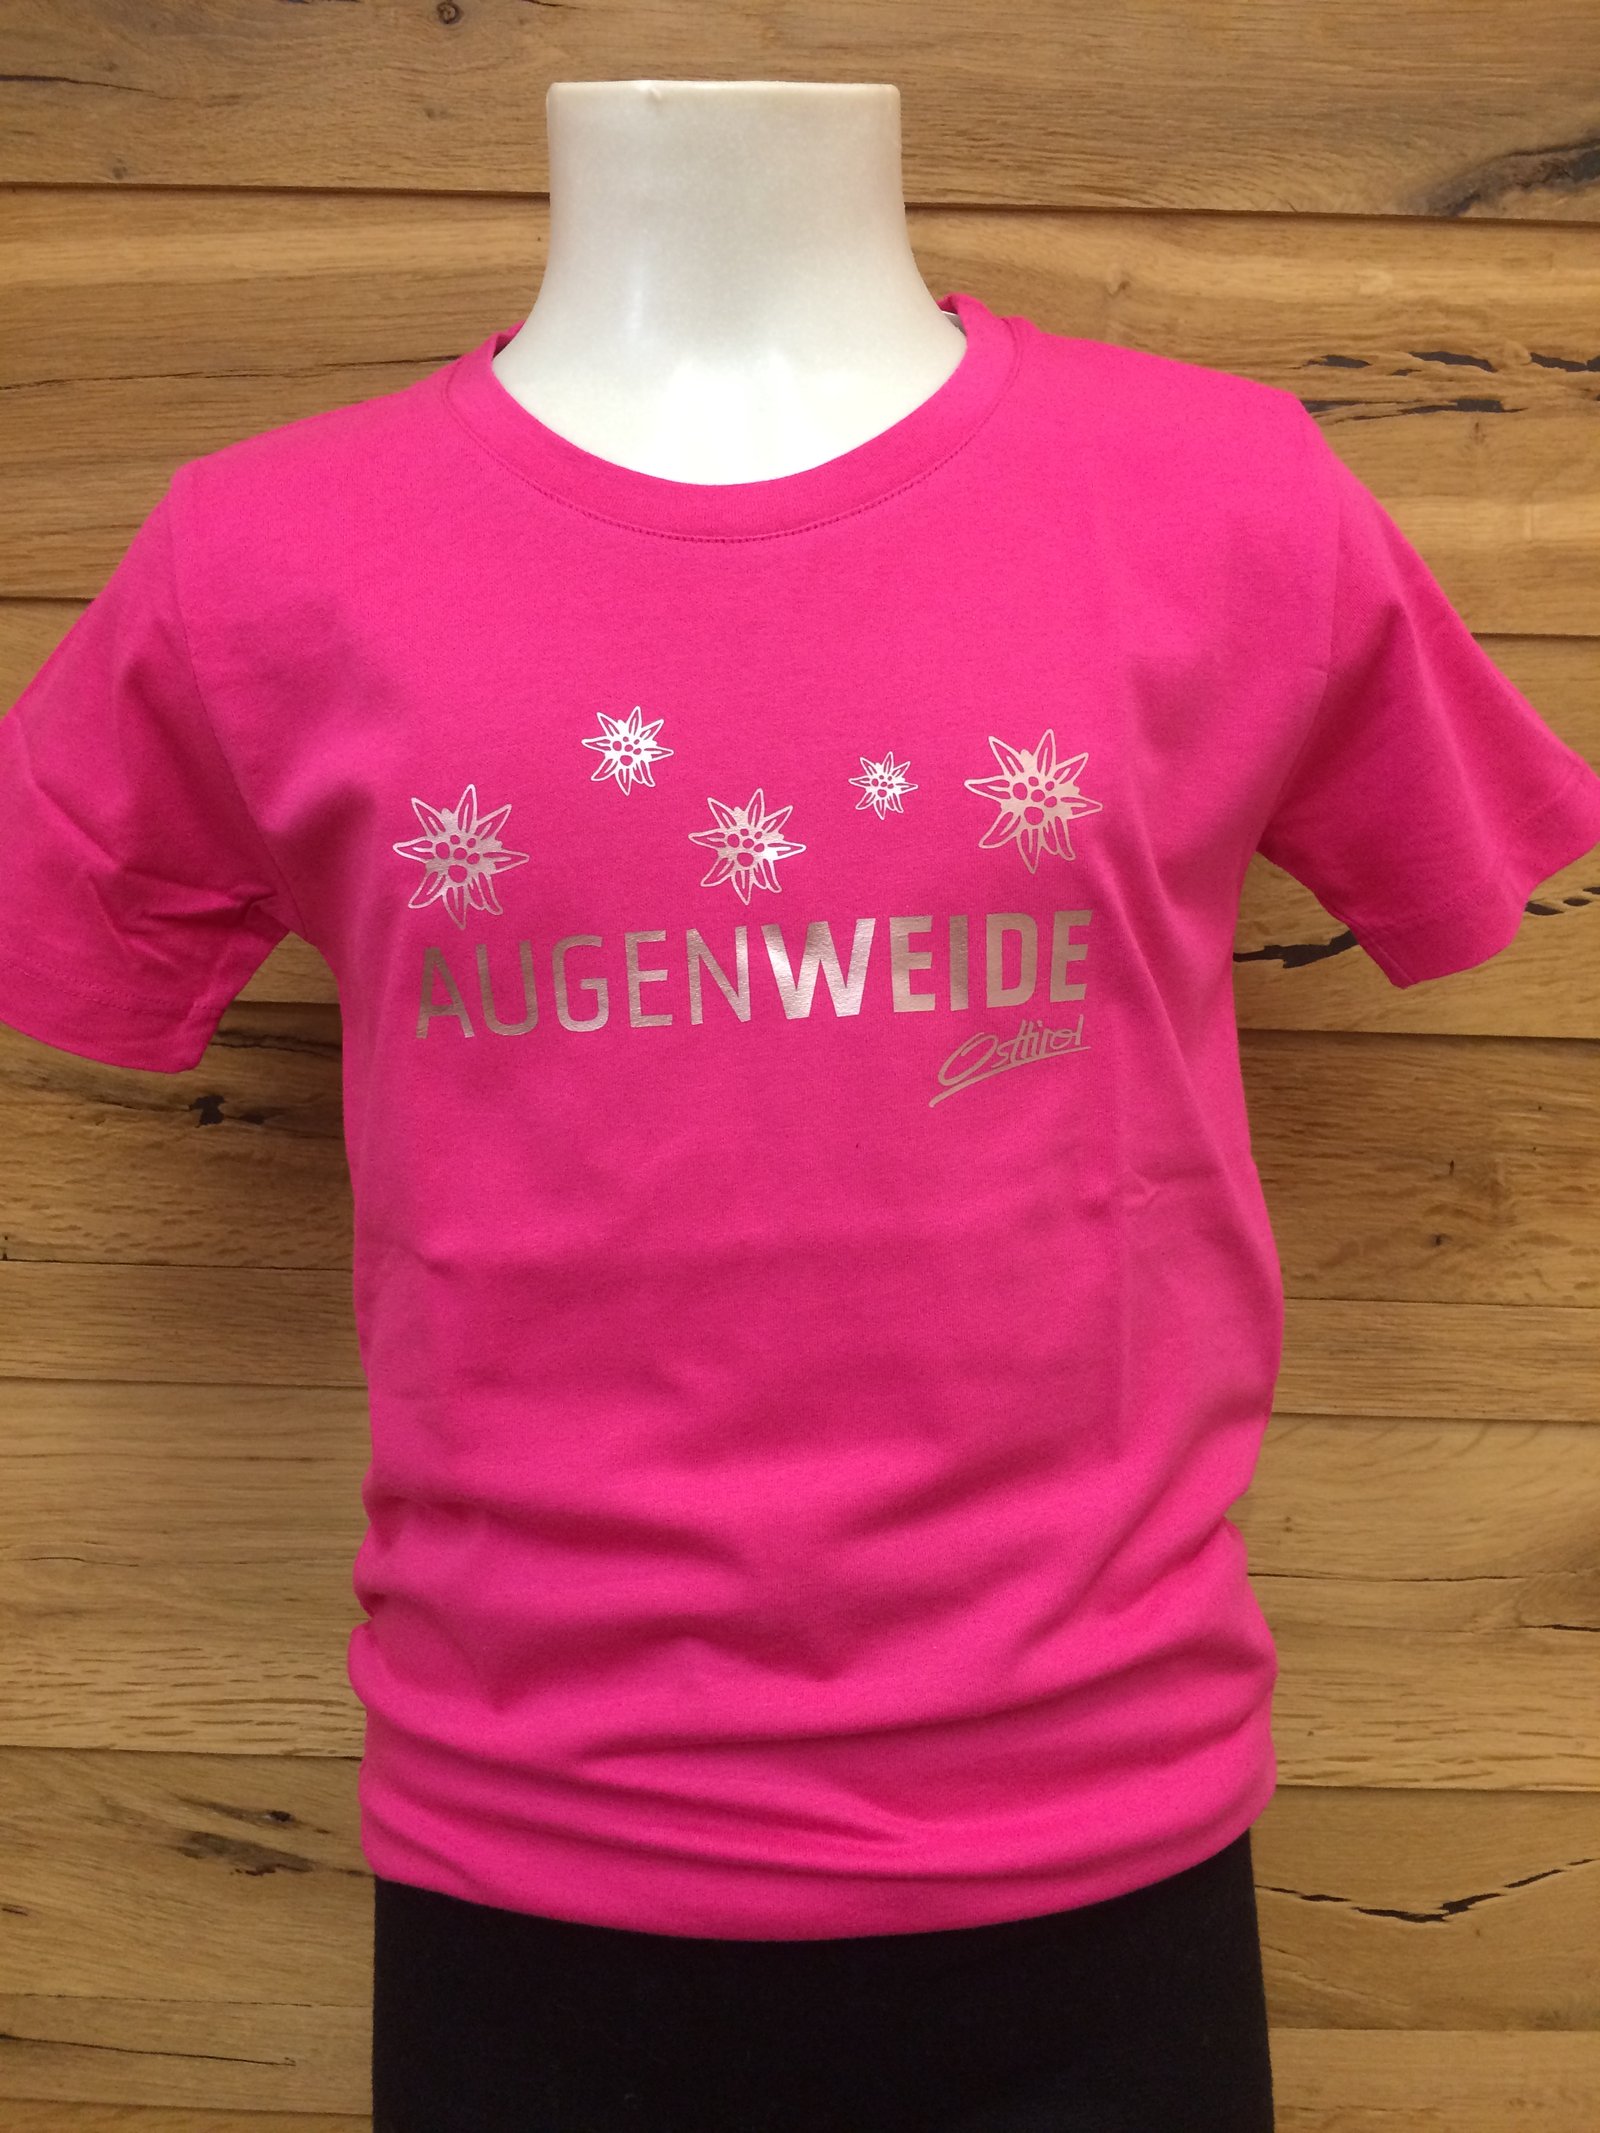 Kinder T-Shirt "Augenweide" pink